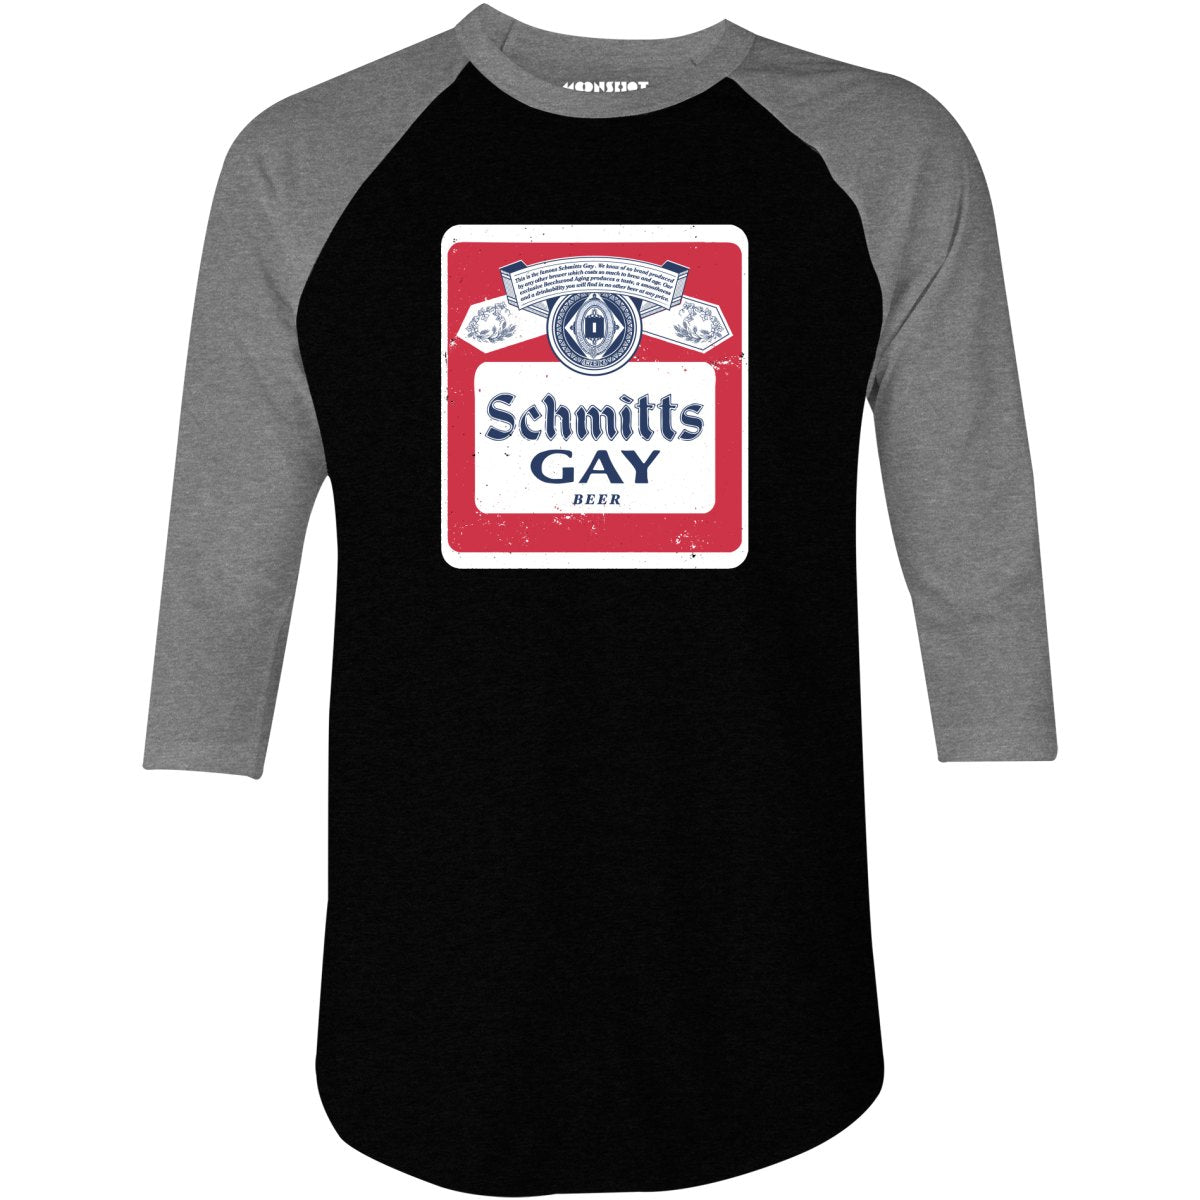 Schmitts Gay Beer - 3/4 Sleeve Raglan T-Shirt